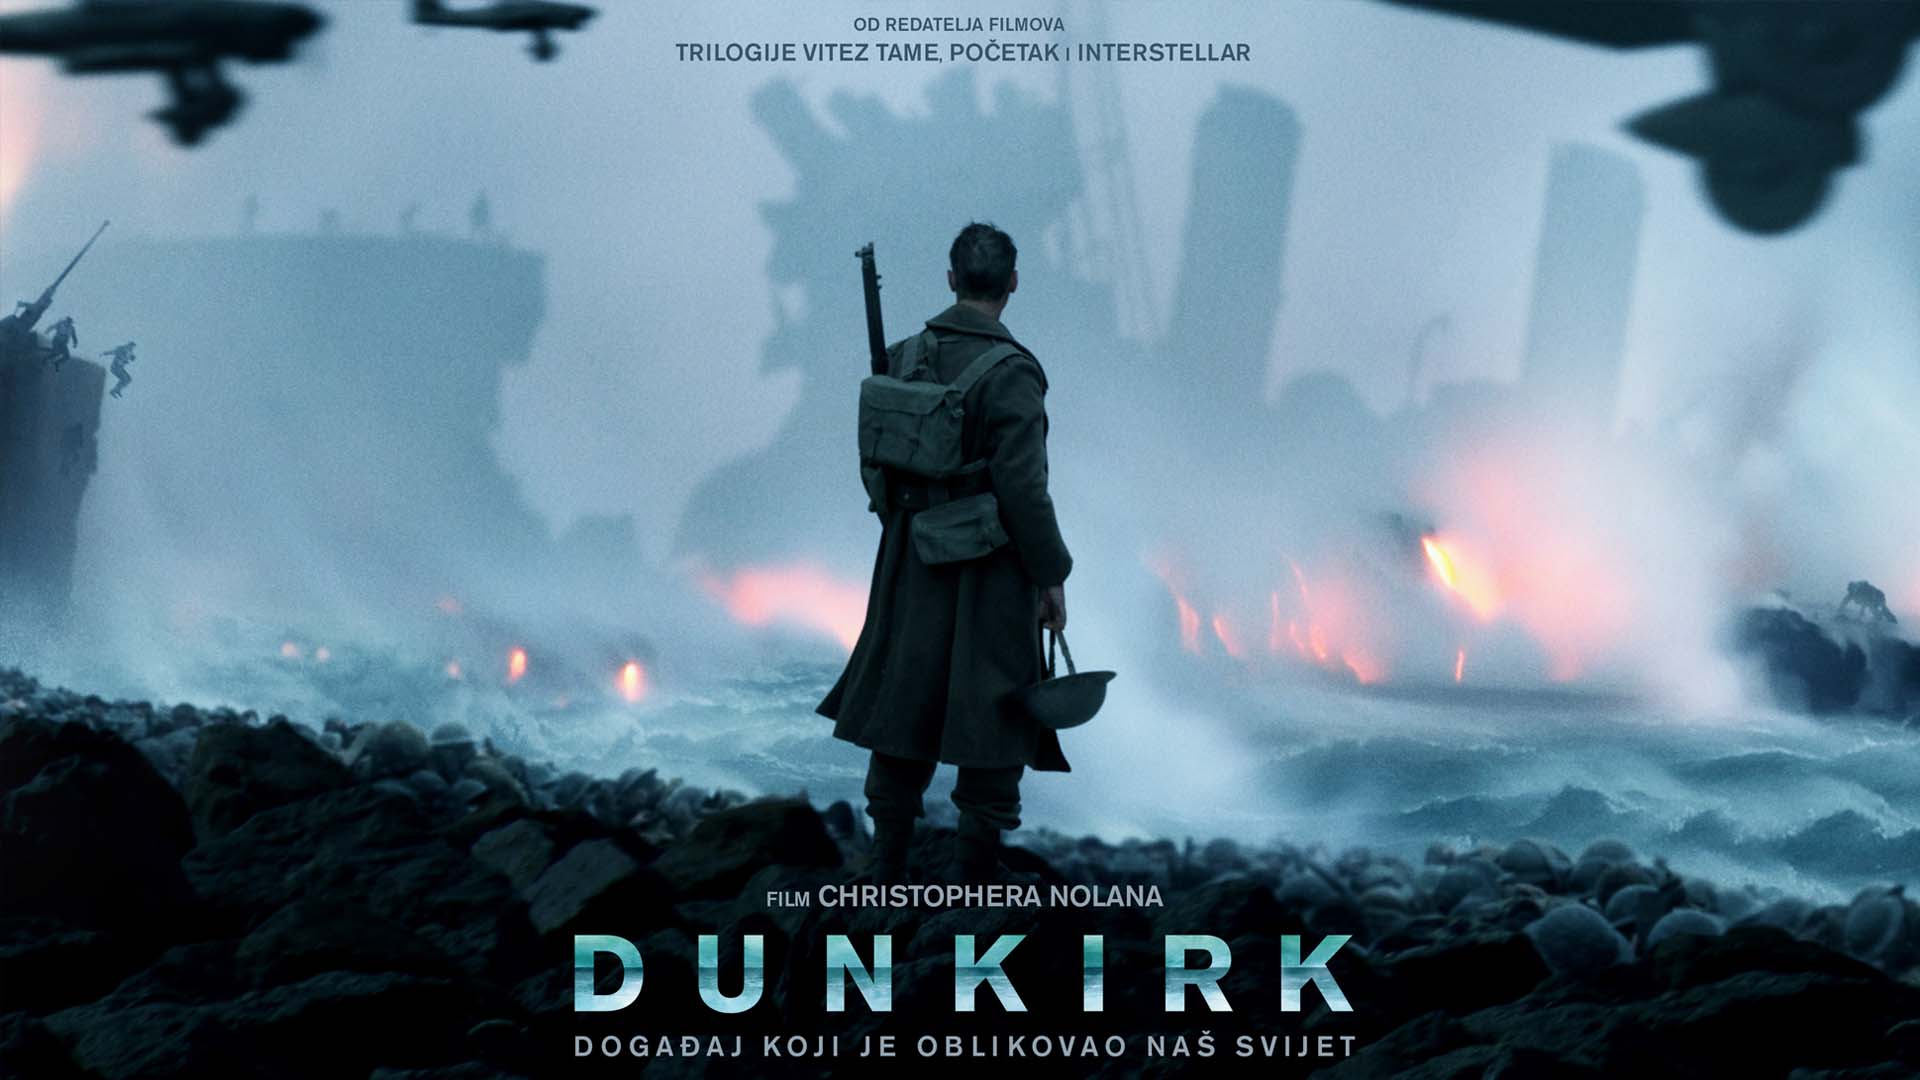 Pogledajte prvi trailer novog filma Christophera Nolana - DUNKIRK